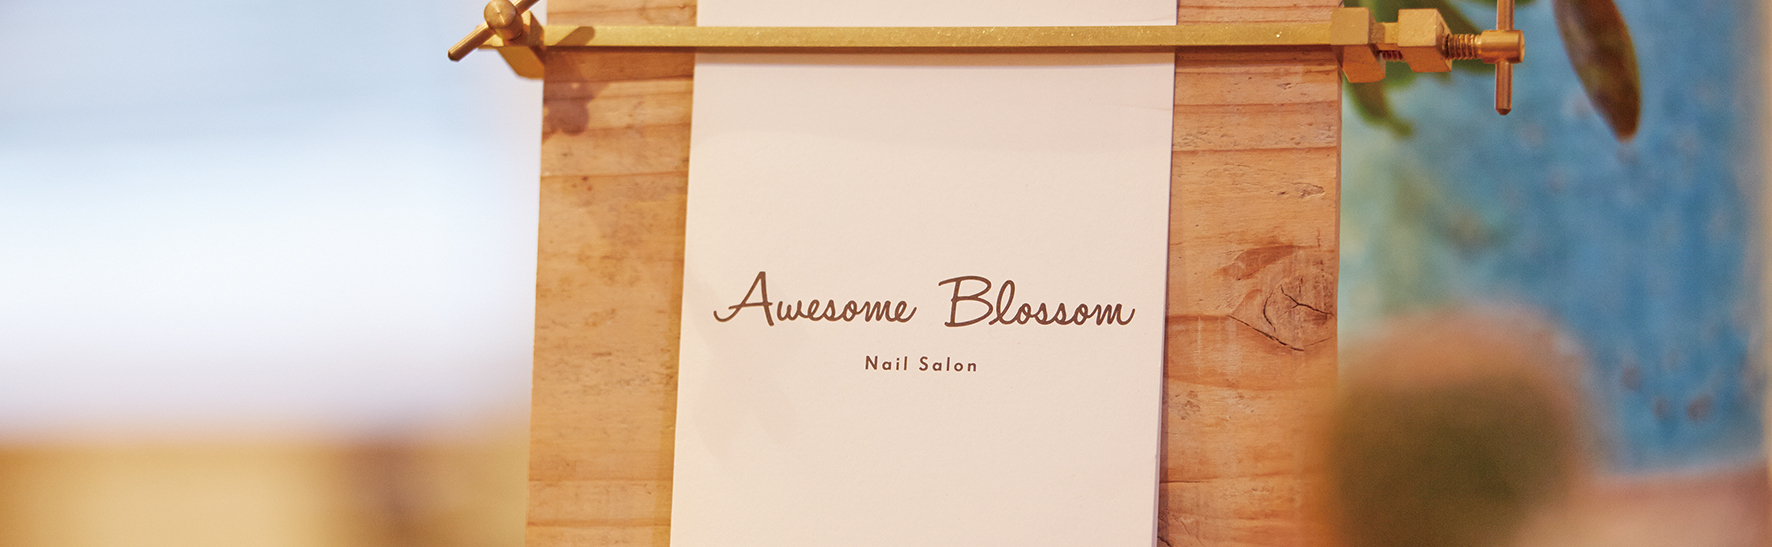 Awesome Blossom - Nail Salon & School｜オーサム ブロッサム - ネイルサロン & スクール